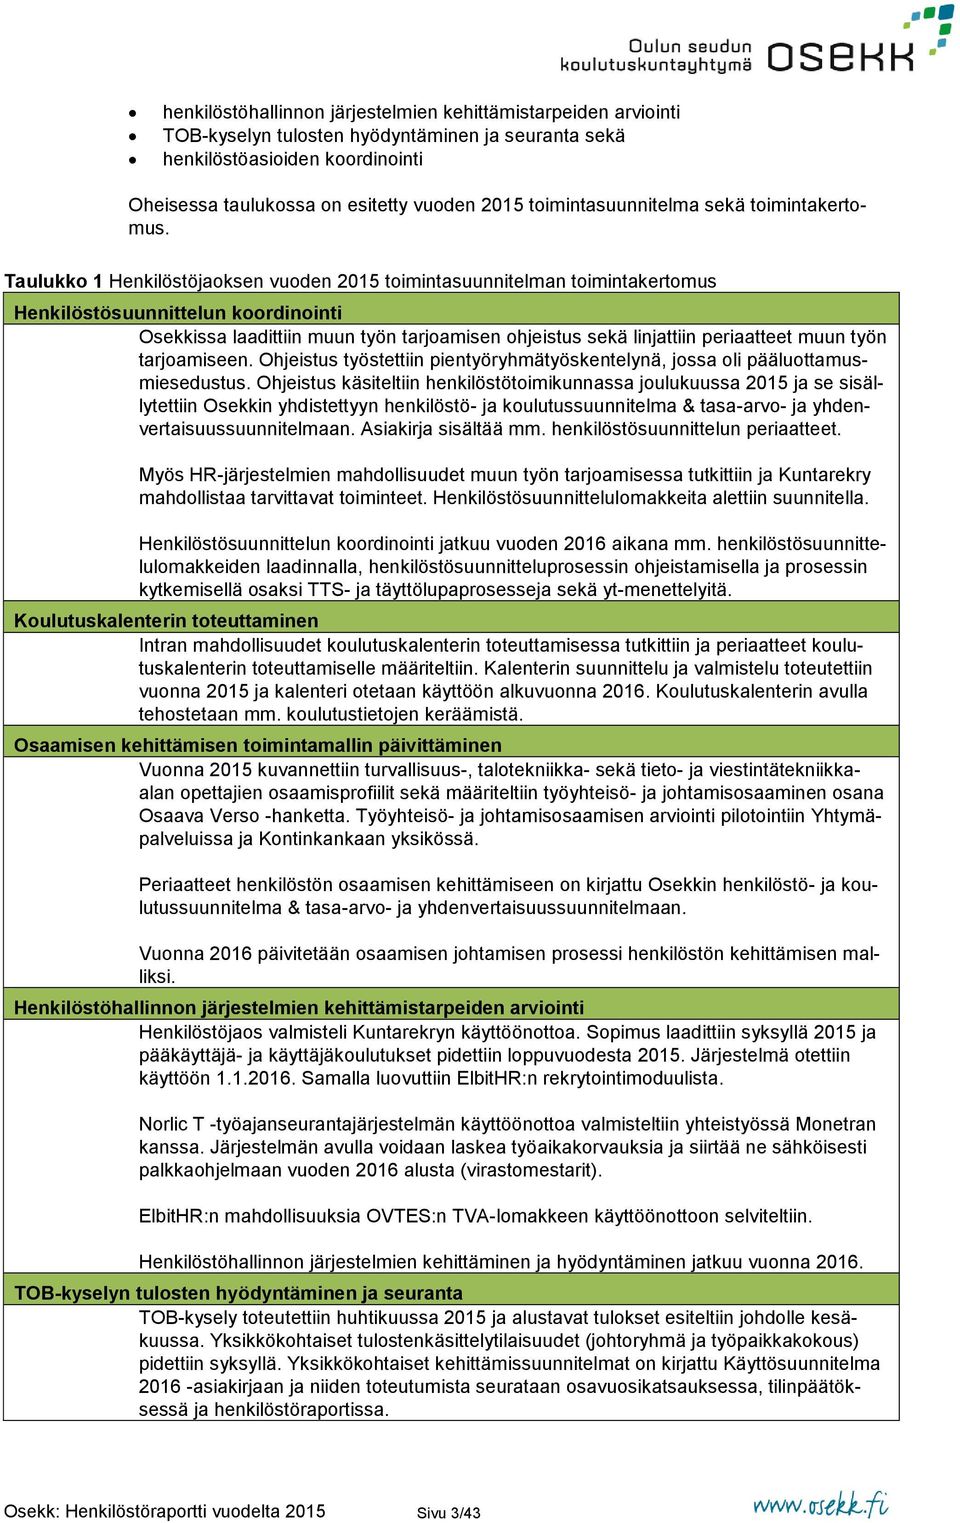 Taulukko 1 Henkilöstöjaoksen vuoden 2015 toimintasuunnitelman toimintakertomus Henkilöstösuunnittelun koordinointi Osekkissa laadittiin muun työn tarjoamisen ohjeistus sekä linjattiin periaatteet